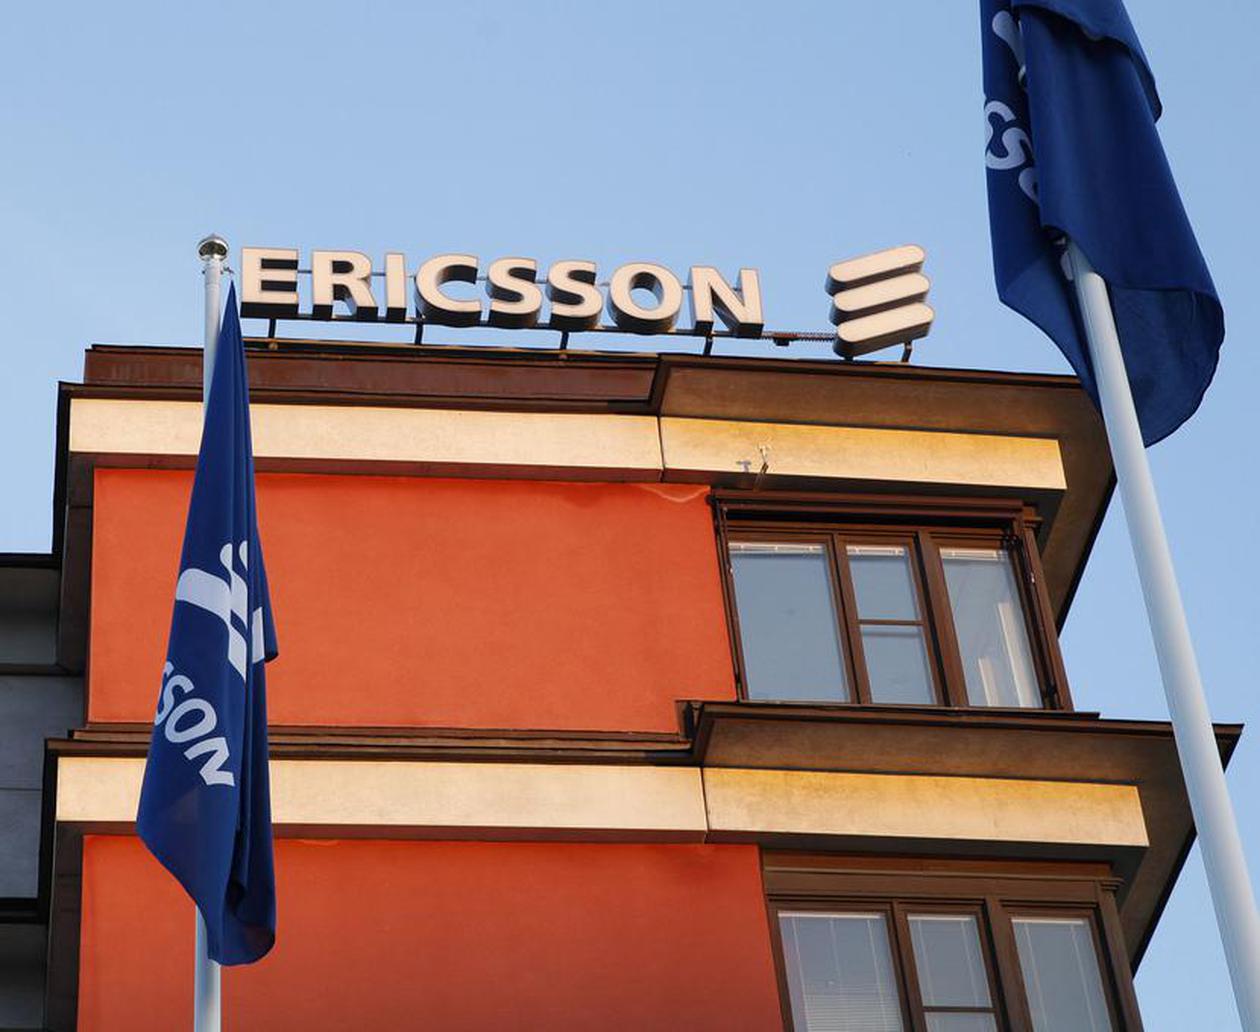 Ericsson prodává kvůli zprávám o možném financování terorismu – Puls Biznesu